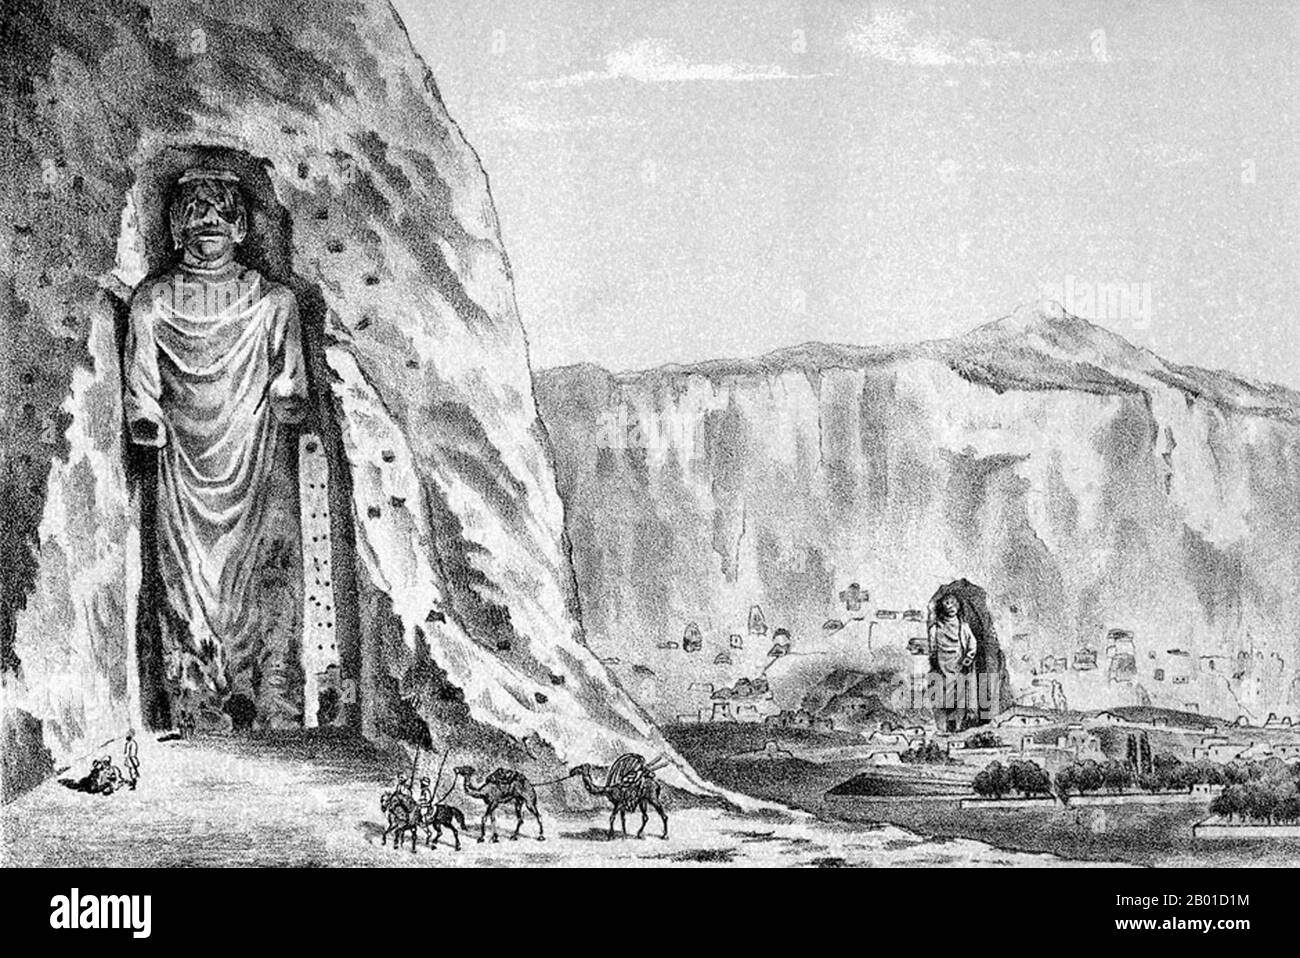 Afghanistan: Die Buddhas von Bamiyan, vertreten durch Iwan Lawrowitsch Jaworski (fl. 1870s-1880s), c. 1885. Die Buddhas von Bamiyan waren zwei monumentale Statuen von stehenden Buddhas aus dem 6.. Jahrhundert, die in die Seite einer Klippe im Bamiyan-Tal in der Region Hazarajat in Zentralafghanistan geschnitzt wurden. Die Statuen wurden 507 n.Chr. erbaut, die größeren 554 n.Chr., und stellten den klassischen Mischstil der Gandhara-Kunst dar. Die Körper wurden direkt von den Sandsteinfelsen gehauen, aber Details wurden in Schlamm mit Stroh modelliert. Sie wurden 2001 von den Taliban absichtlich gesprengt und zerstört und als „Idole“ deklariert. Stockfoto